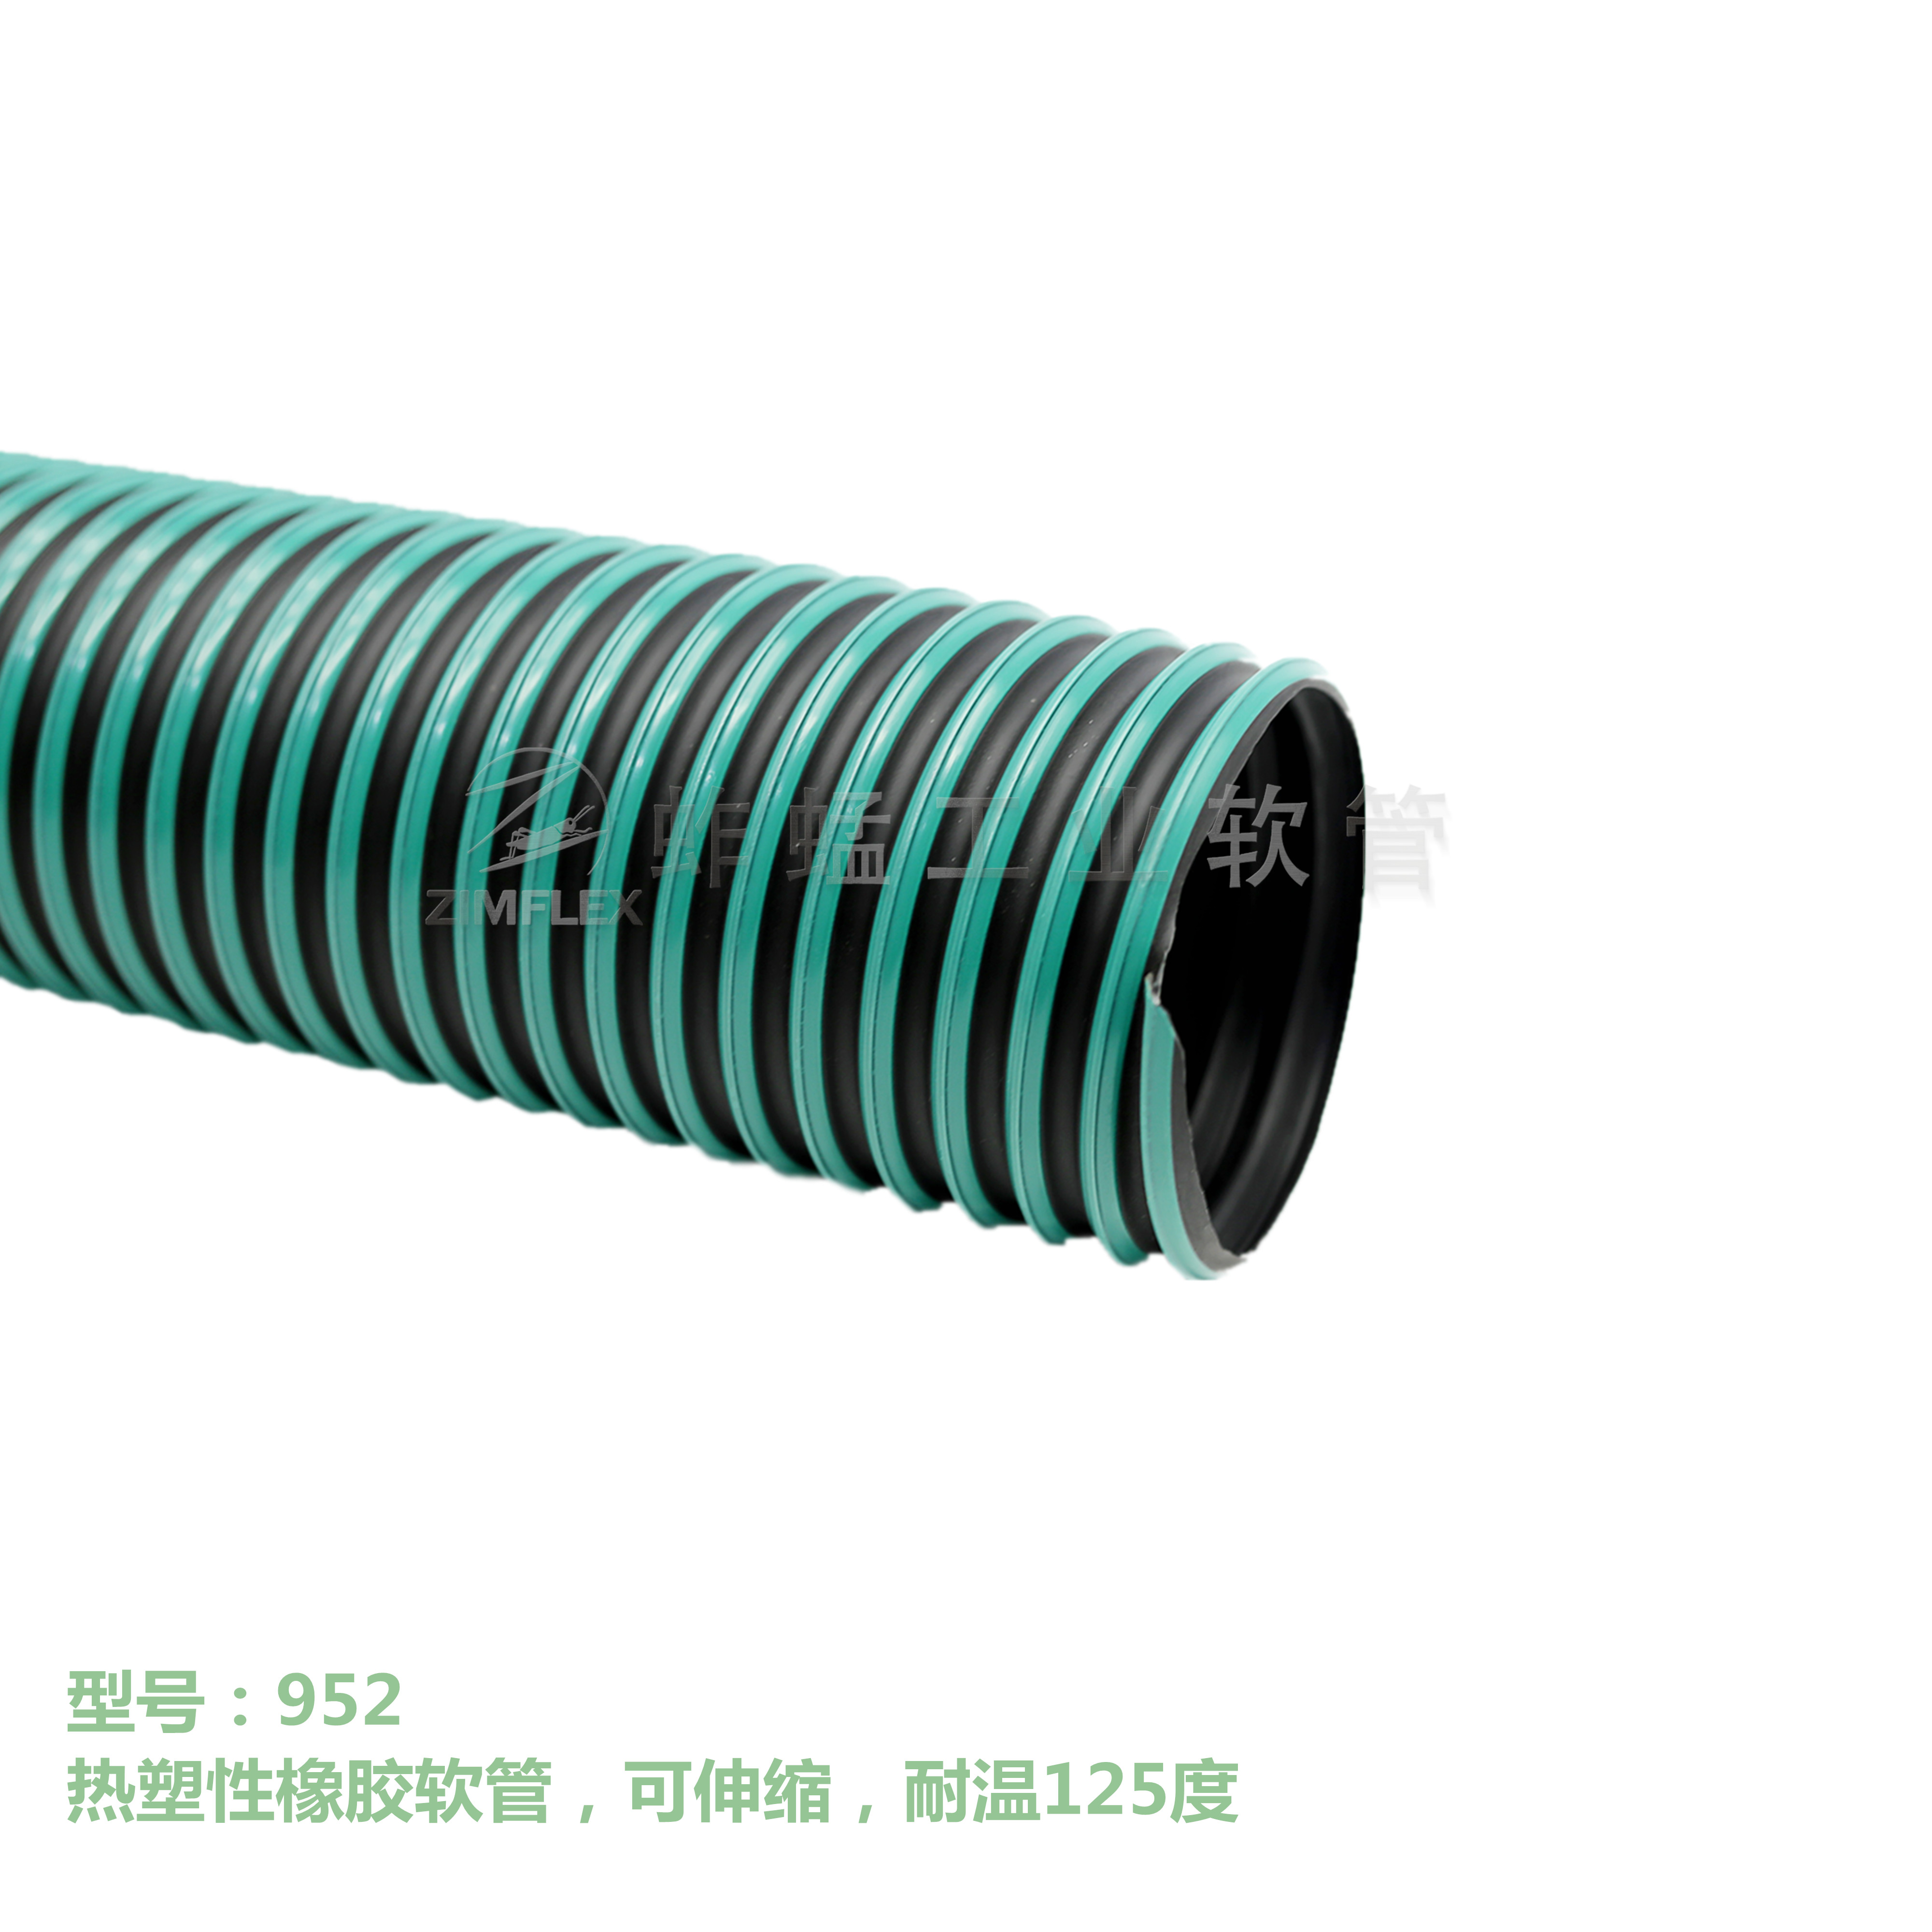 952 熱塑性橡膠軟管，可伸縮，耐溫125度